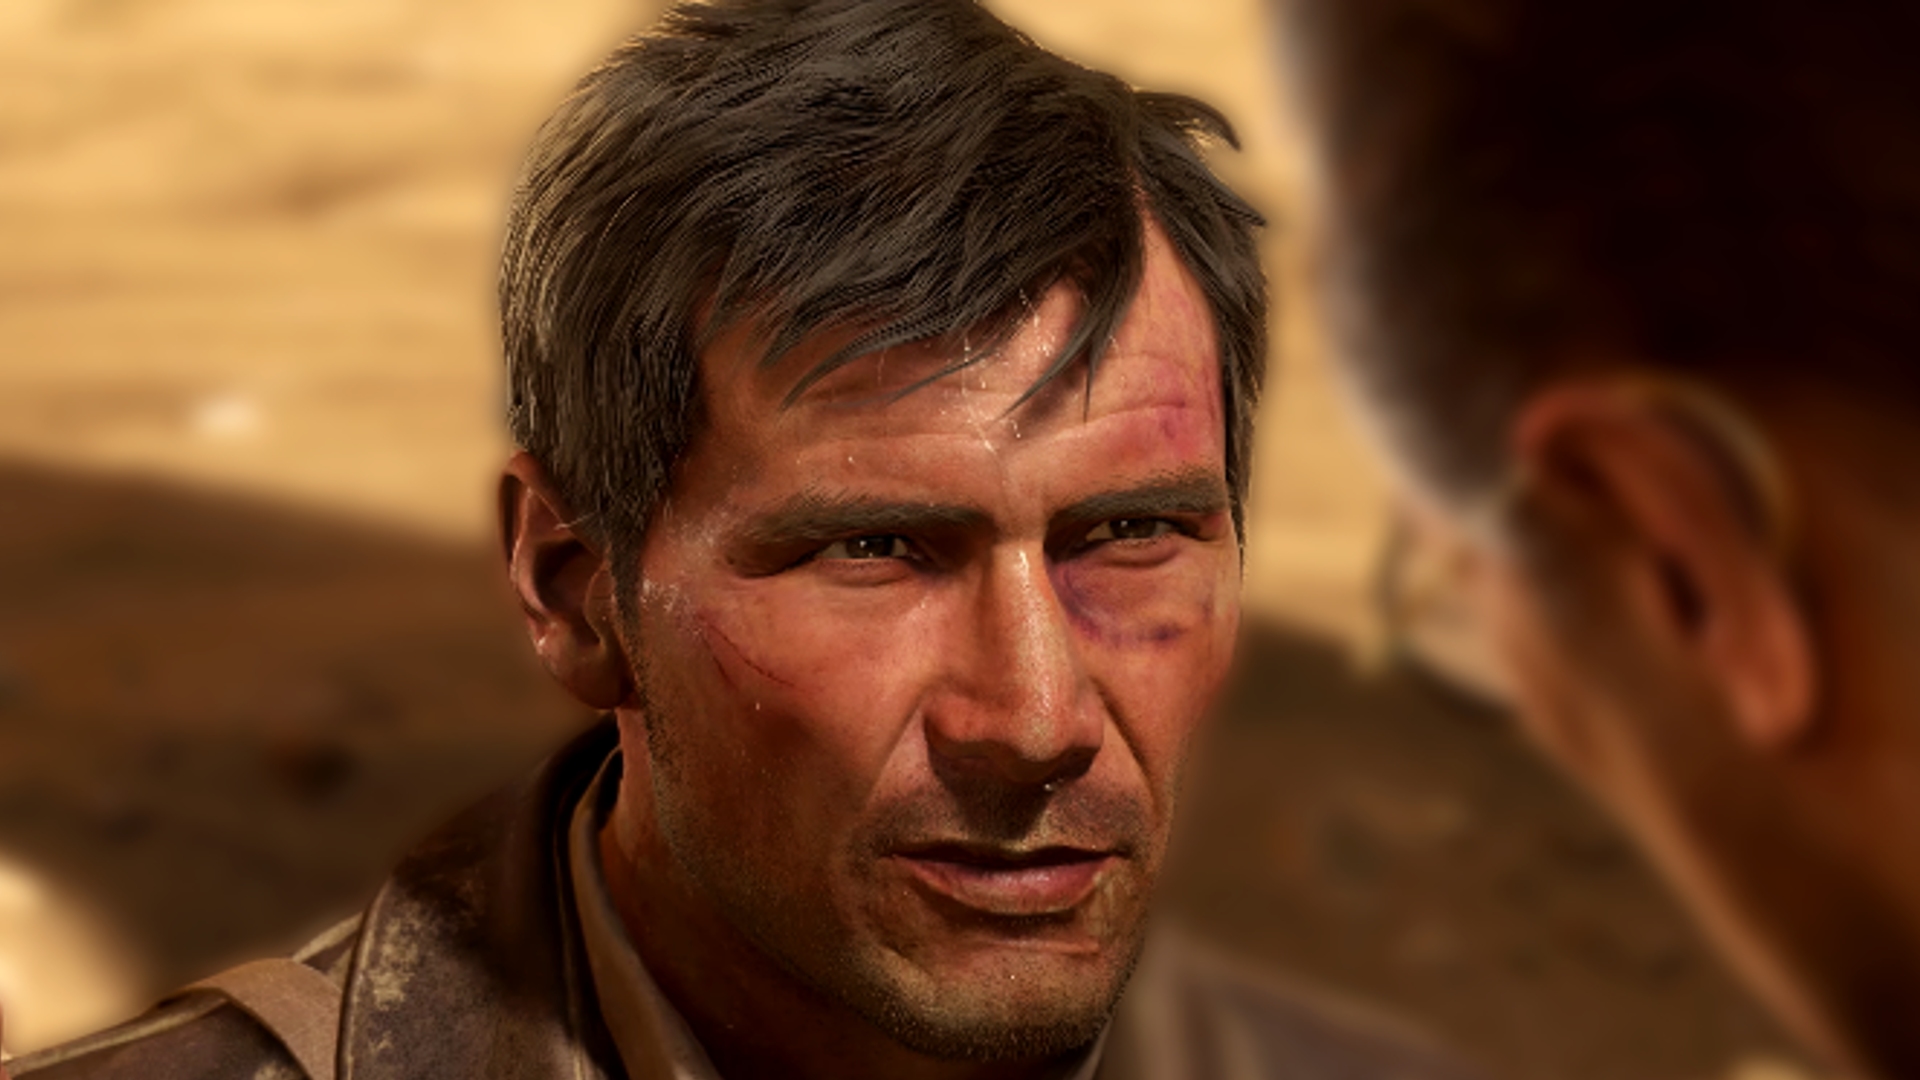 Bethesda’s Wolfenstein developer reveals new Indiana Jones game